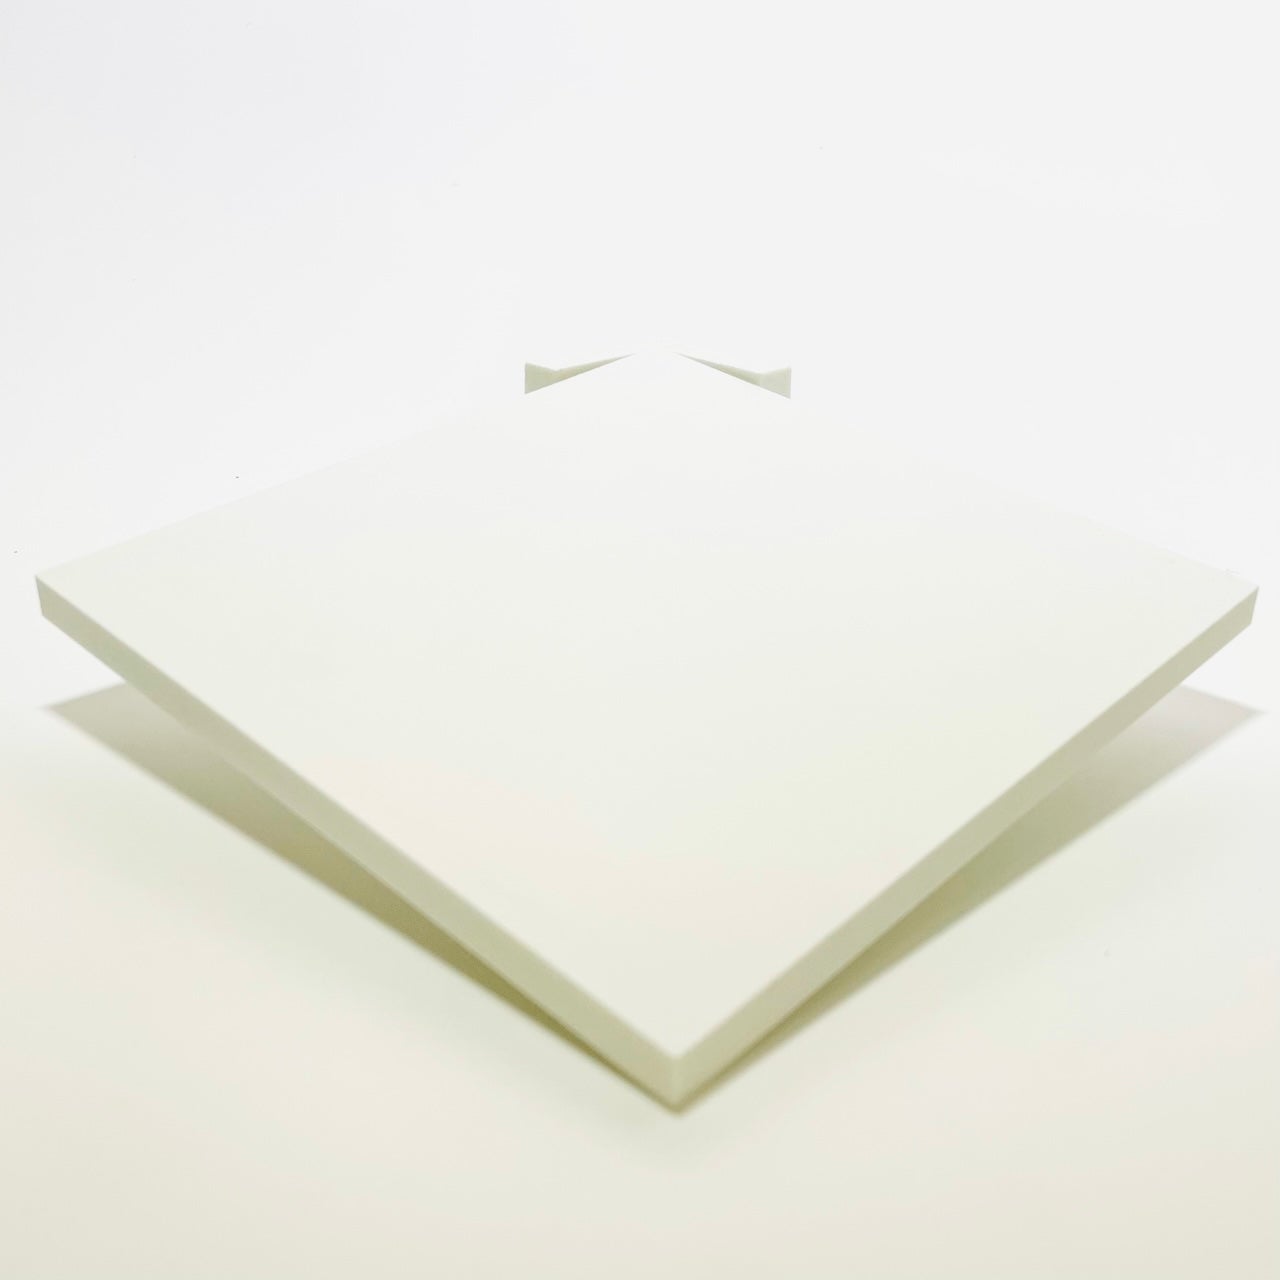 Pannello Forex PVC bianco Sp. 10 mm x 150 x 100 cm